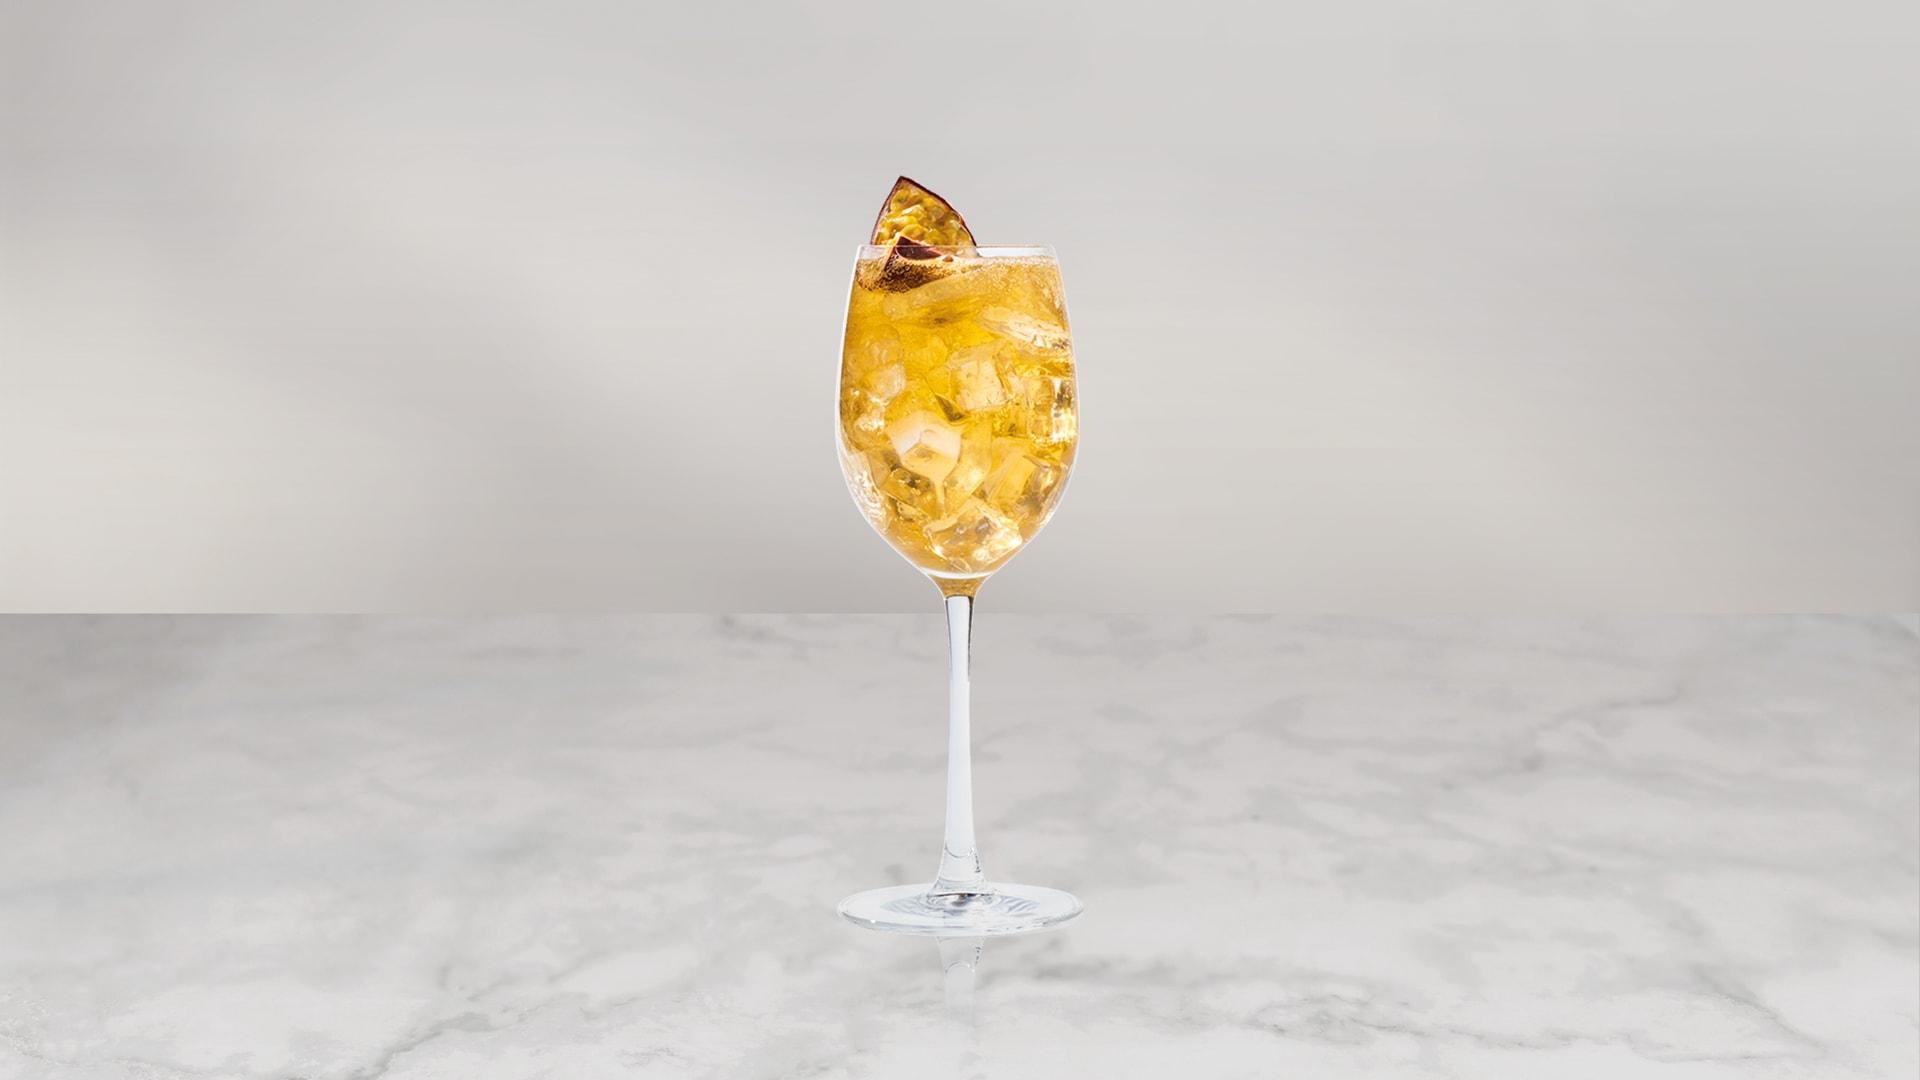 Smirnoff Mango & Passionfruit Twist Spritz cocktail